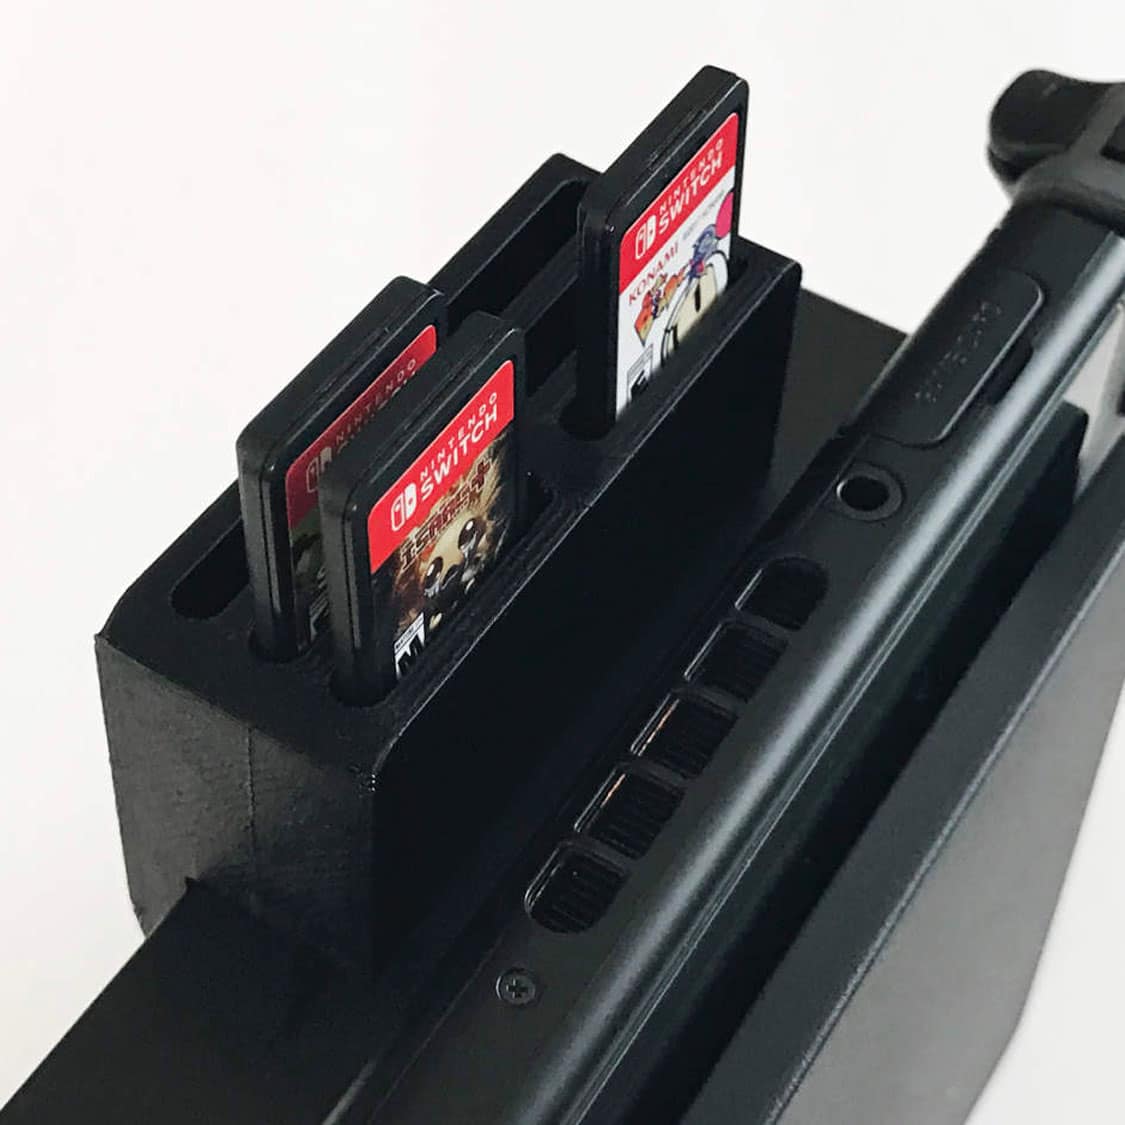 game cartridge holder